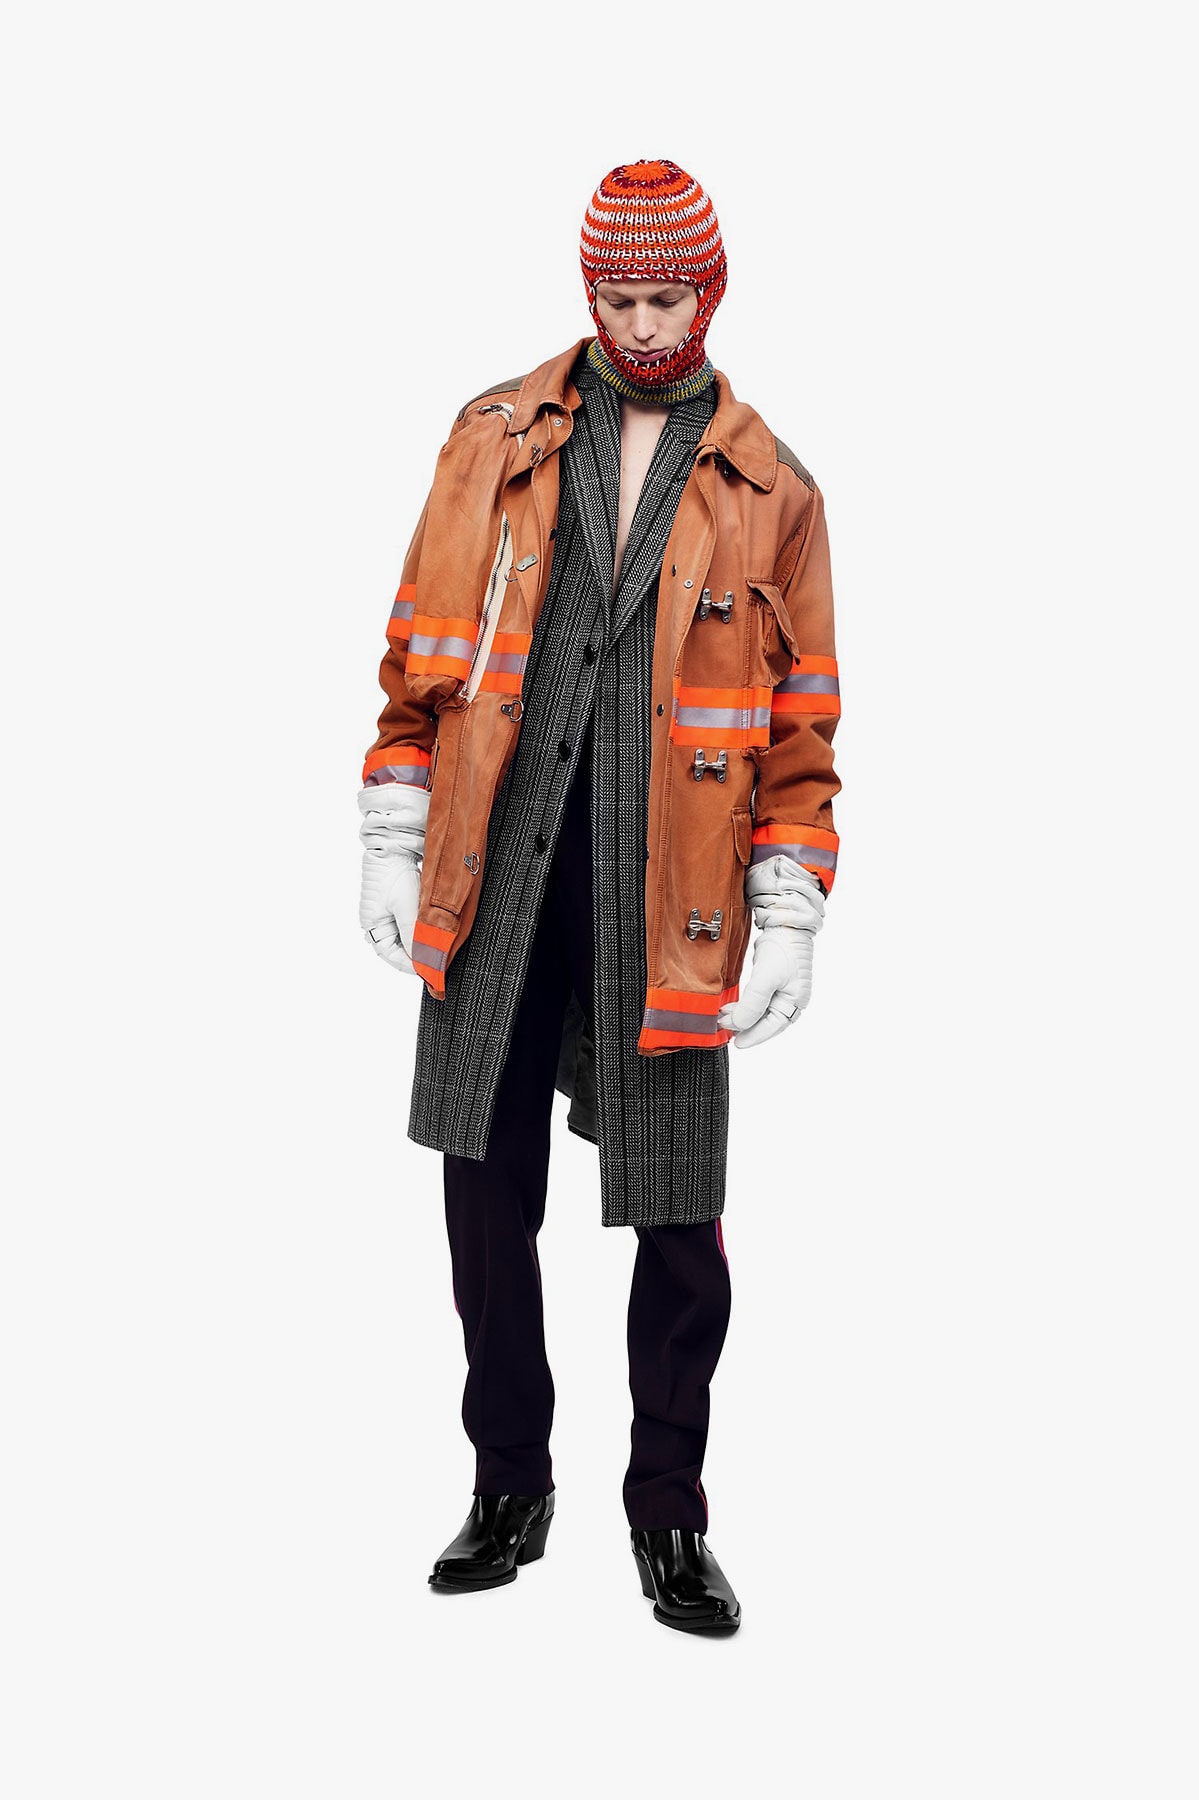 årsag Godkendelse Held og lykke CALVIN KLEIN 205W39NYC FW18 Fireman Clothing | Hypebeast